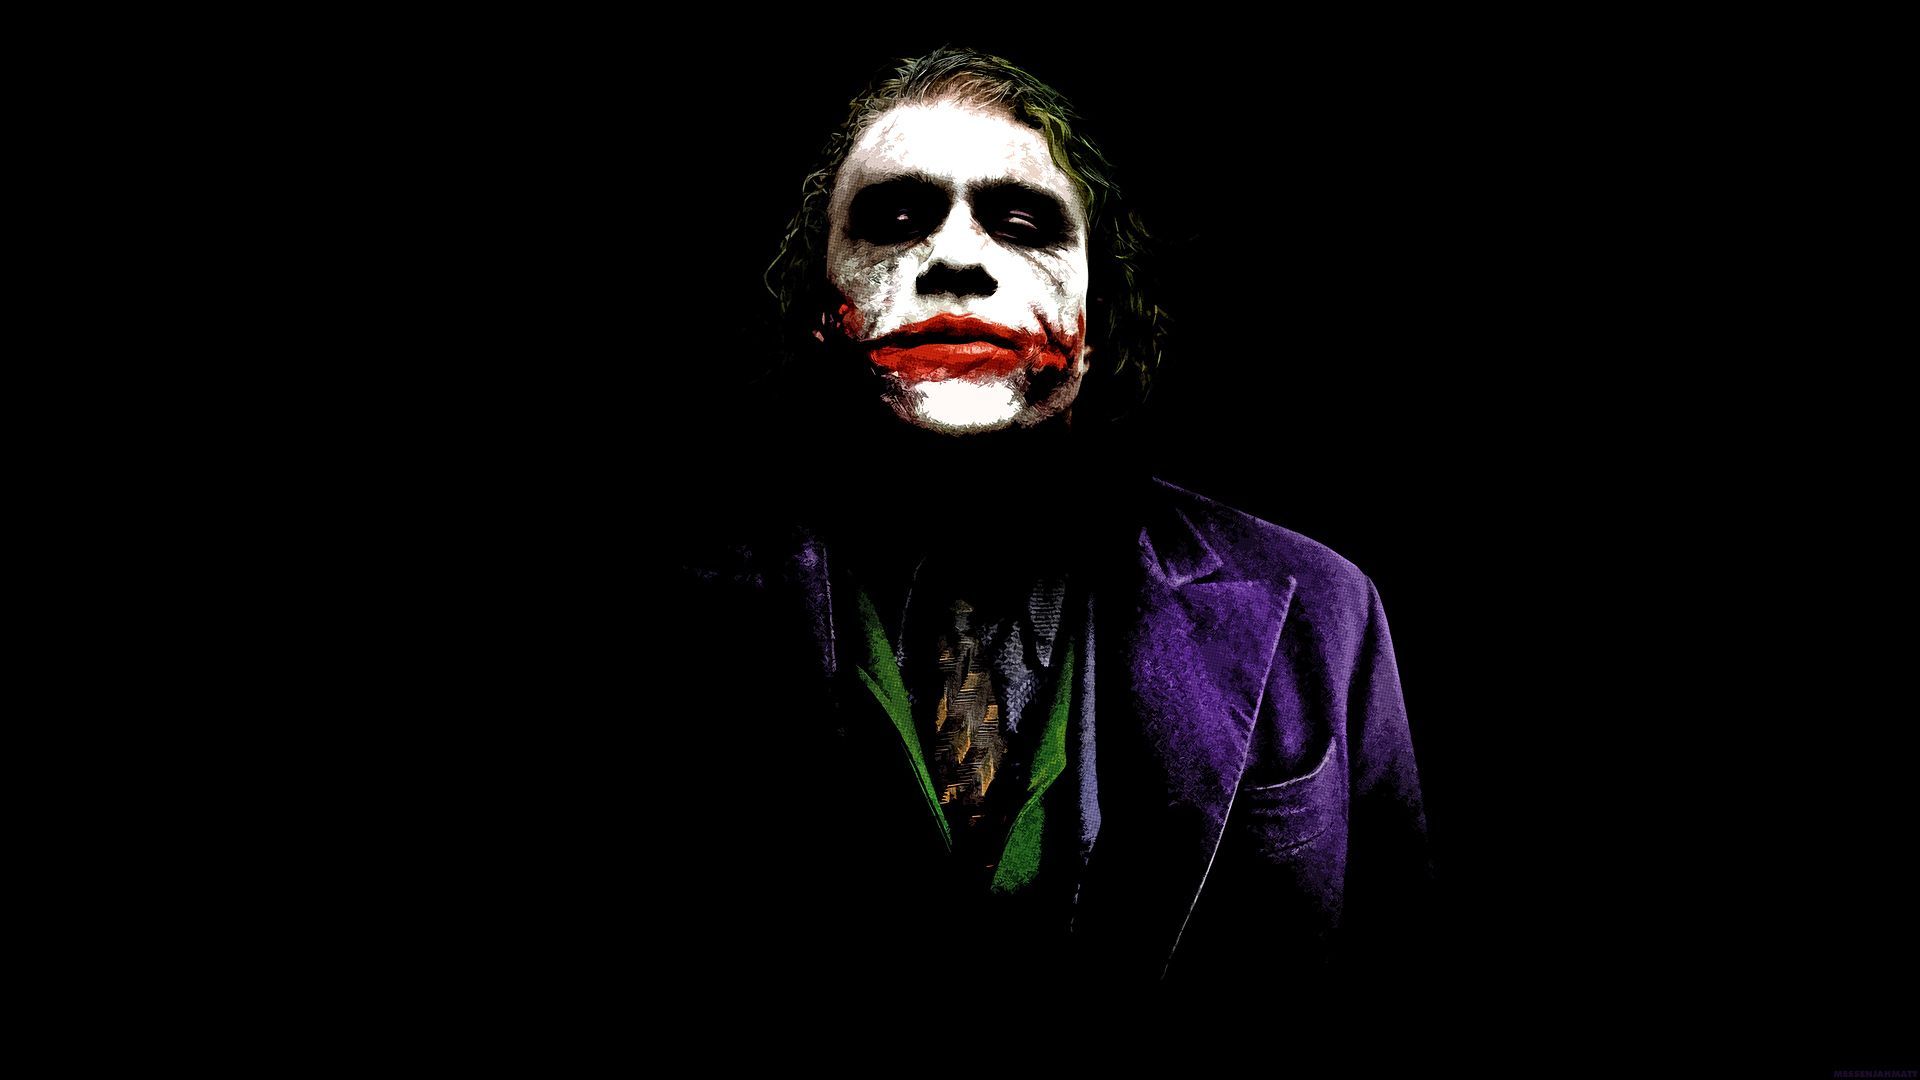 joker. Joker wallpaper, Joker quotes, Joker